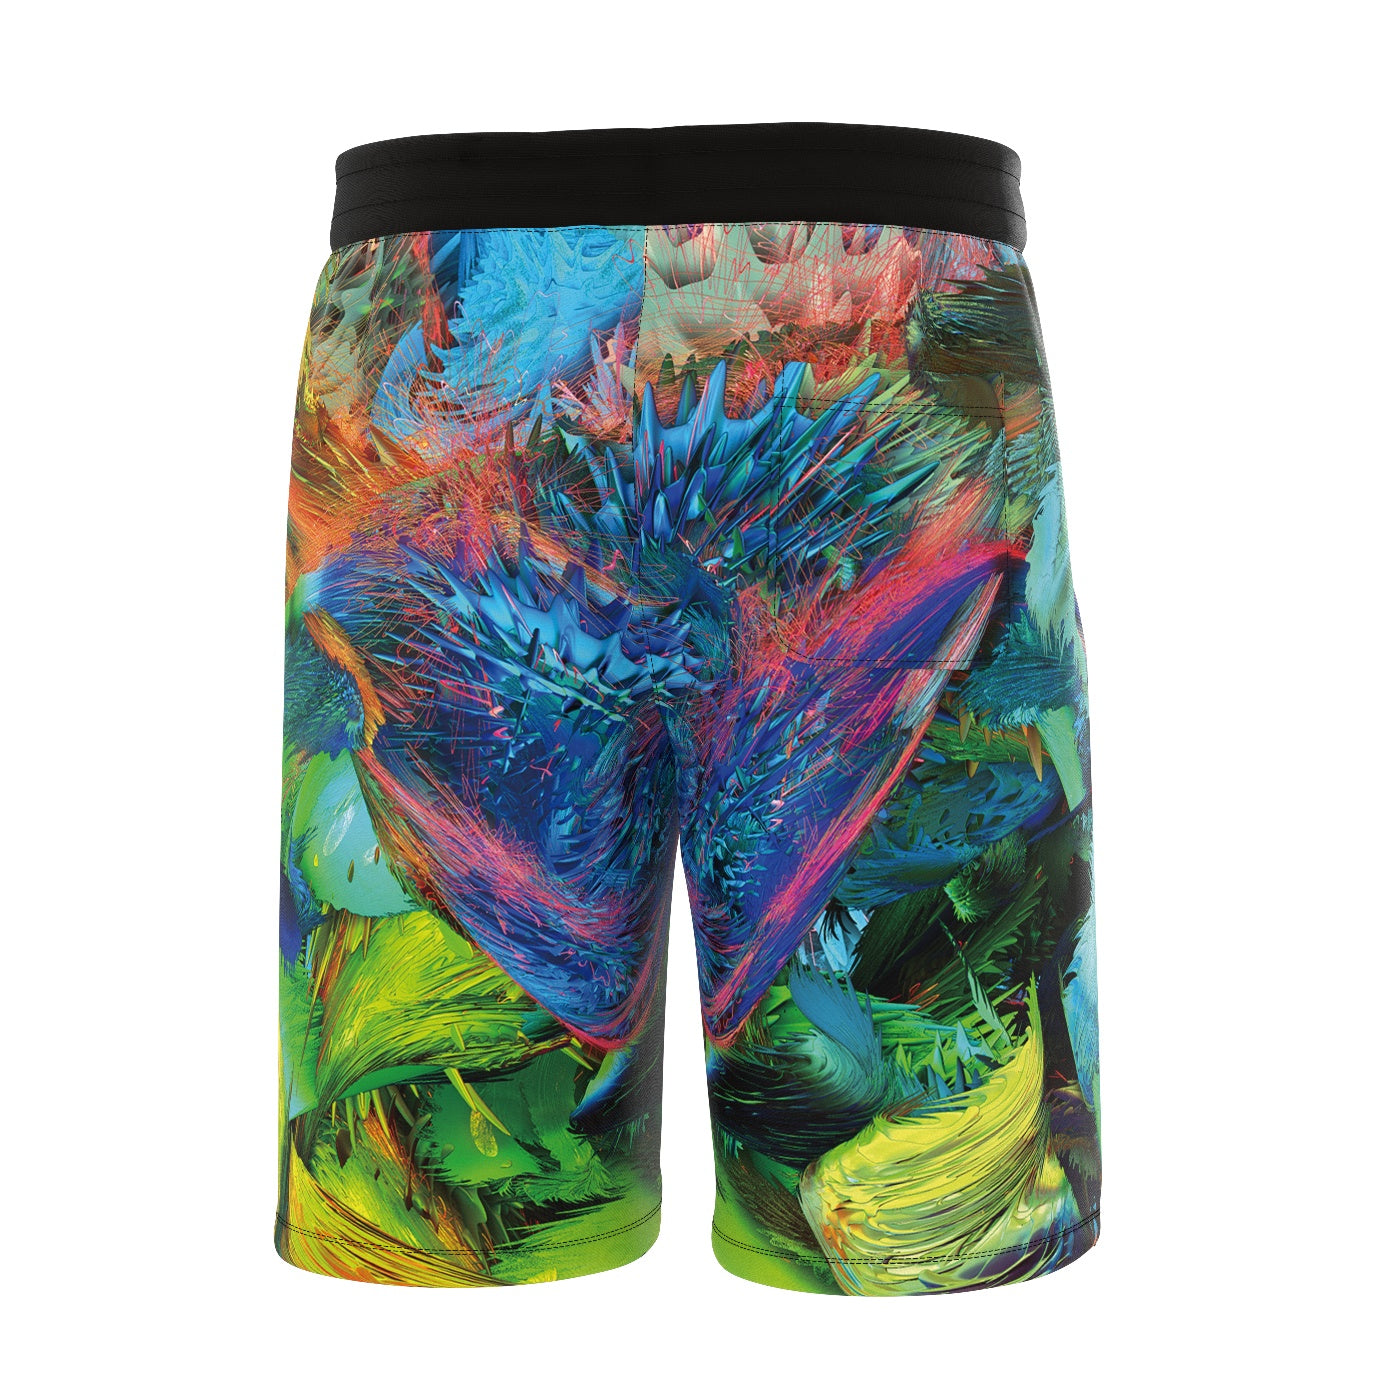 Amazonian Shorts